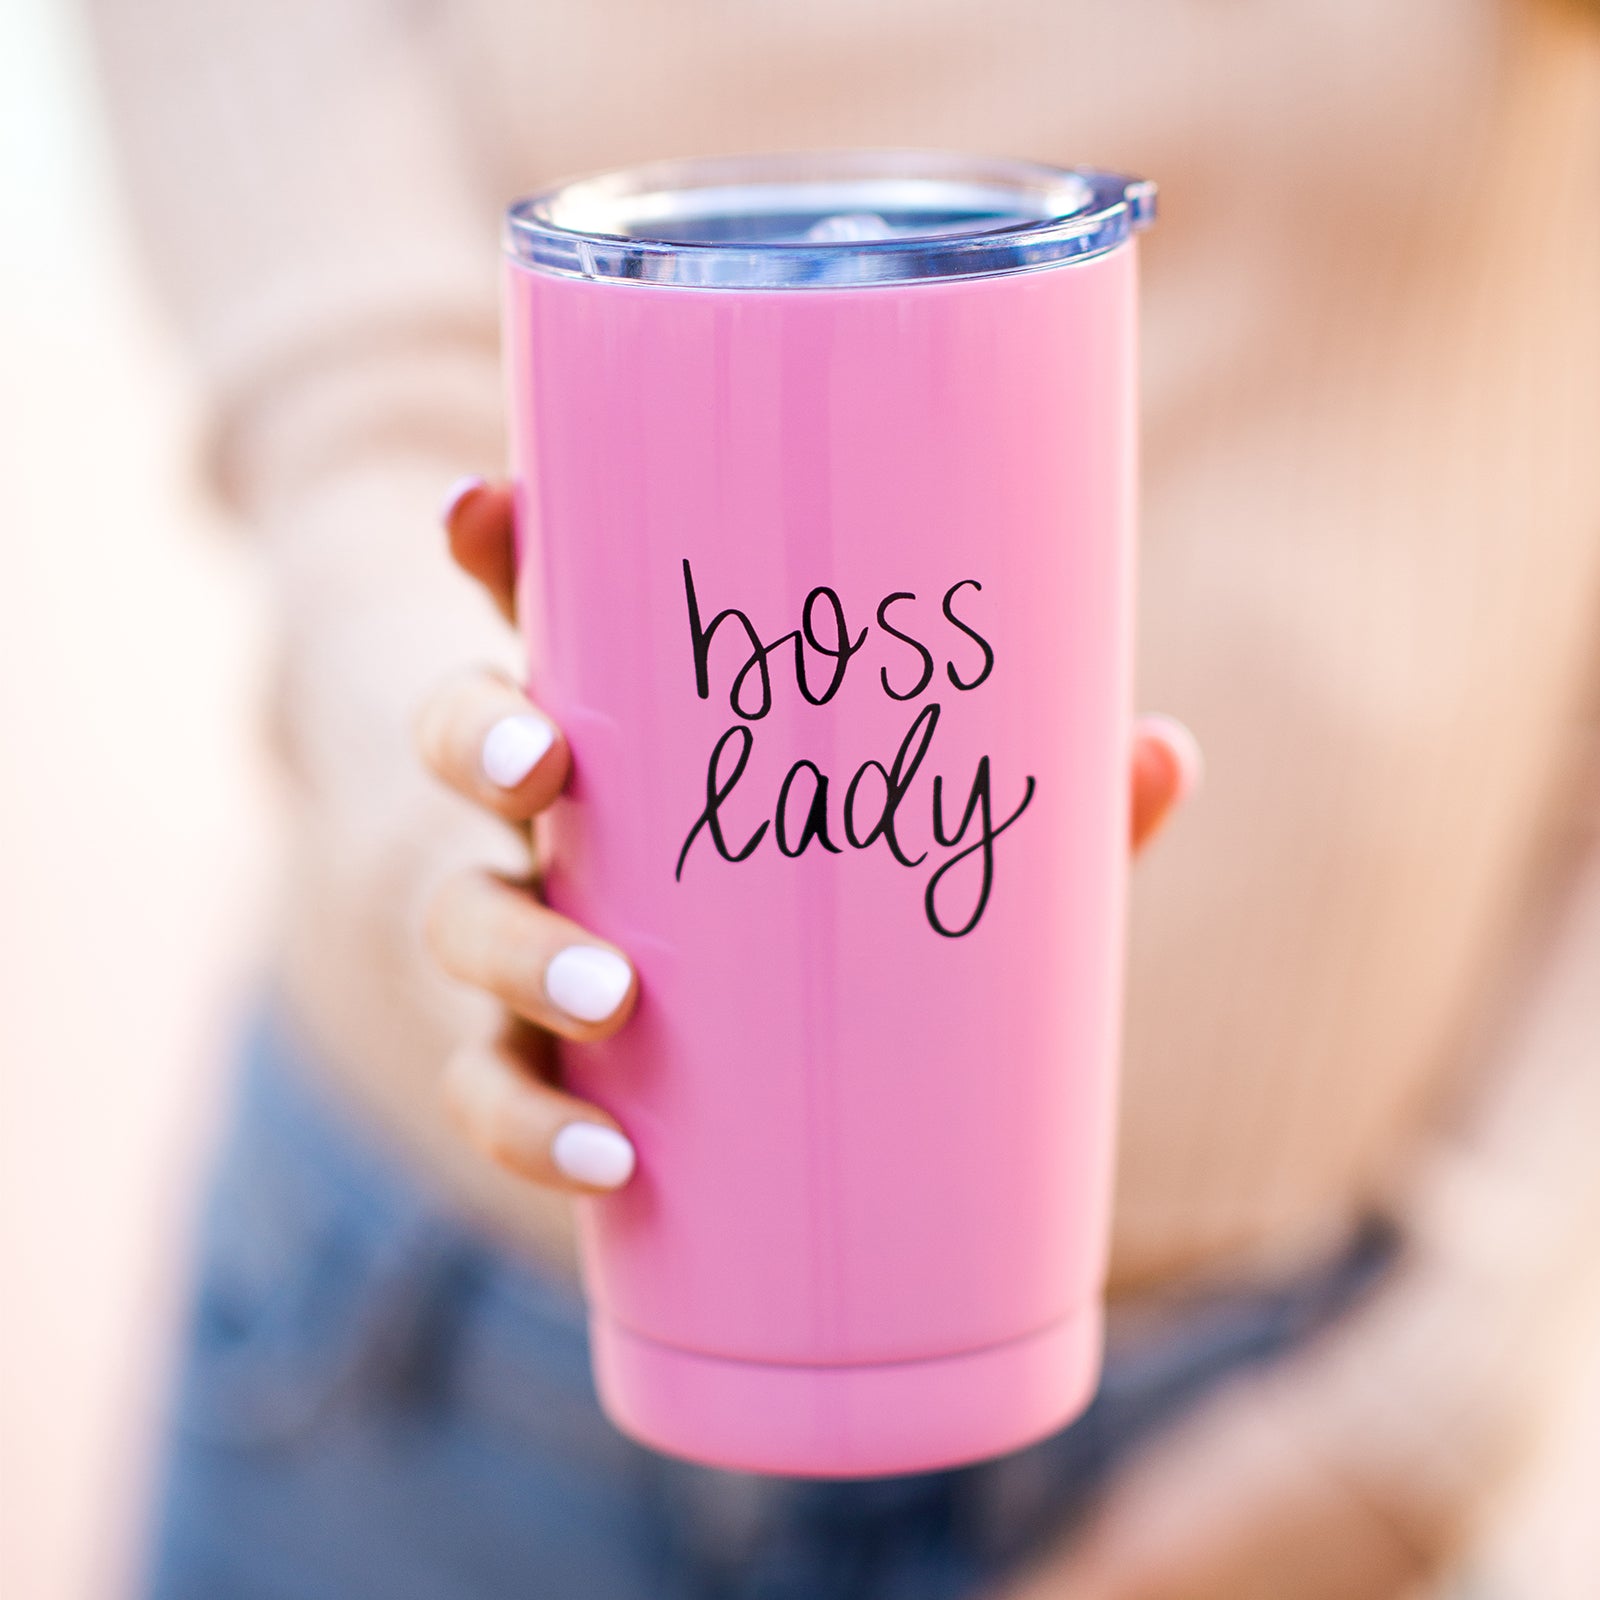 Boss Lady (Pink)